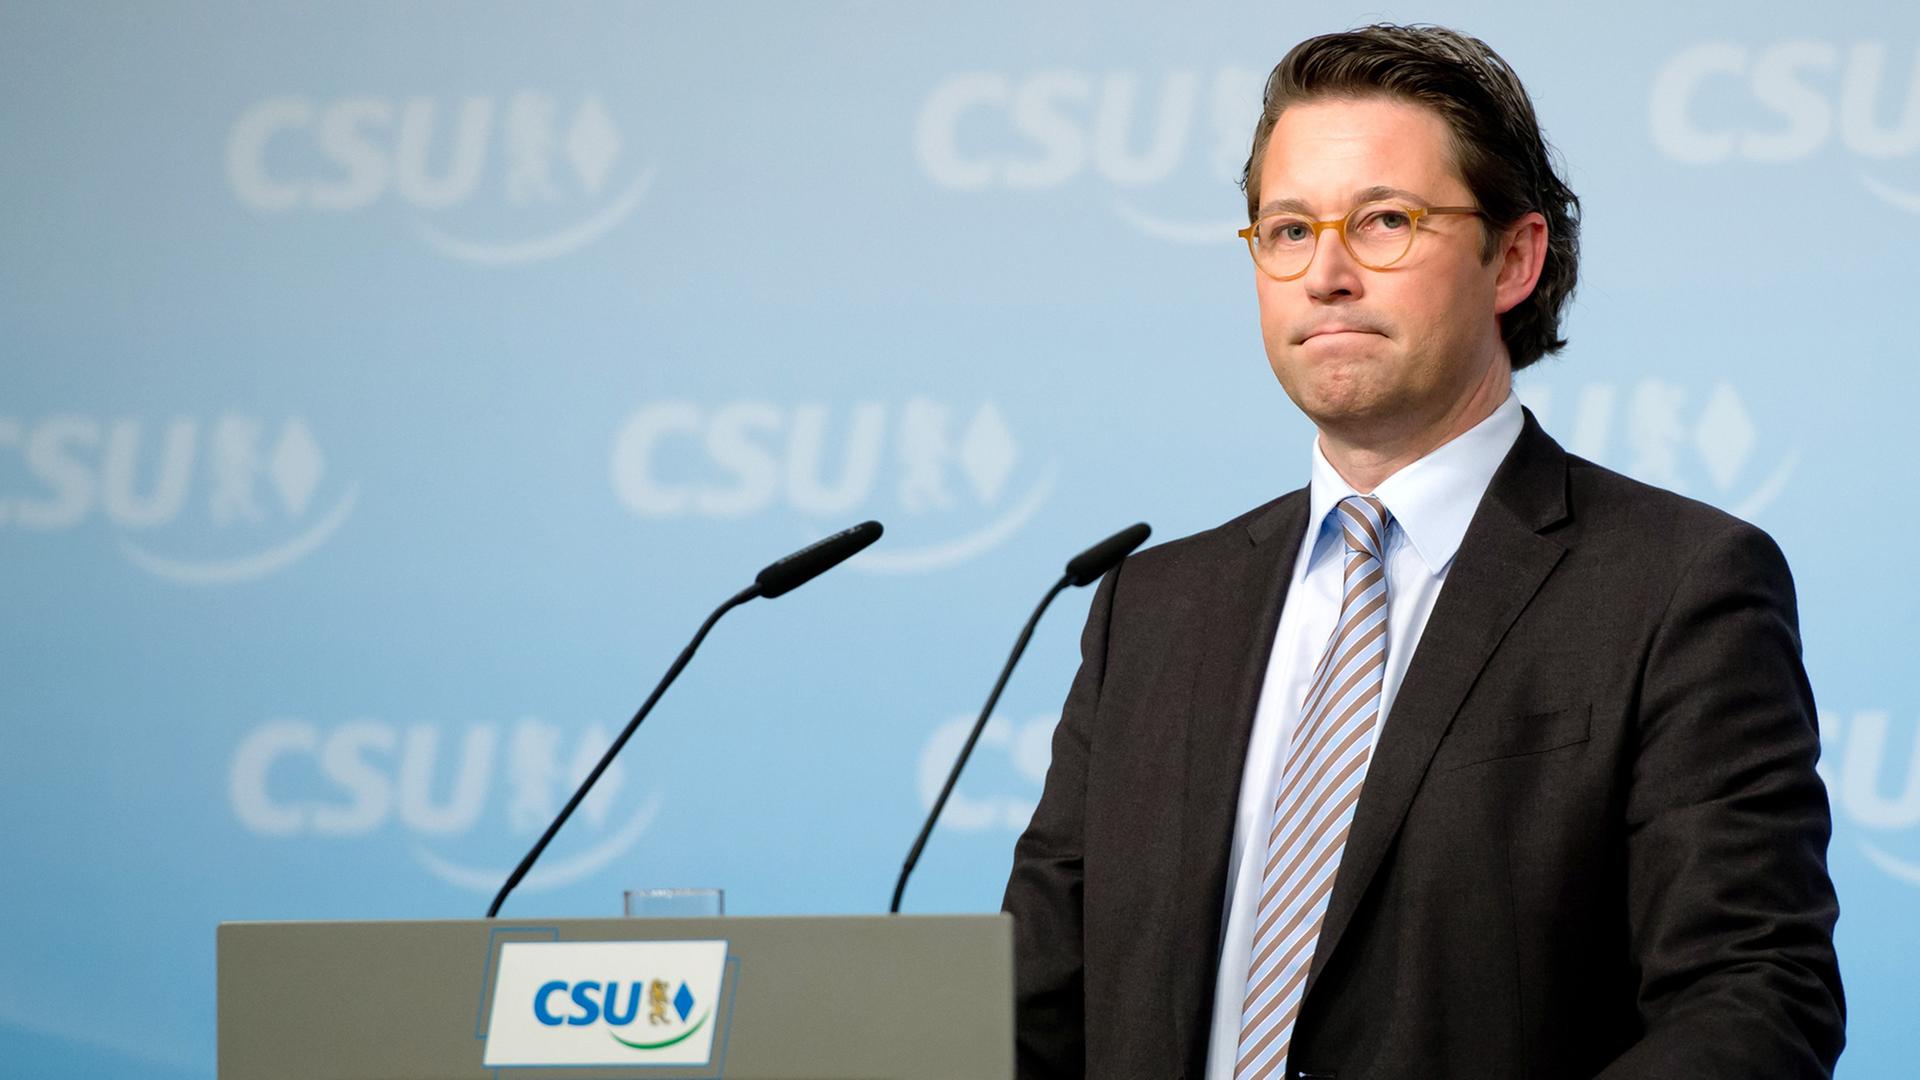 CSU-Generalsekretär Andreas Scheuer spricht an einem Podium mit der Aufschrift CSU.